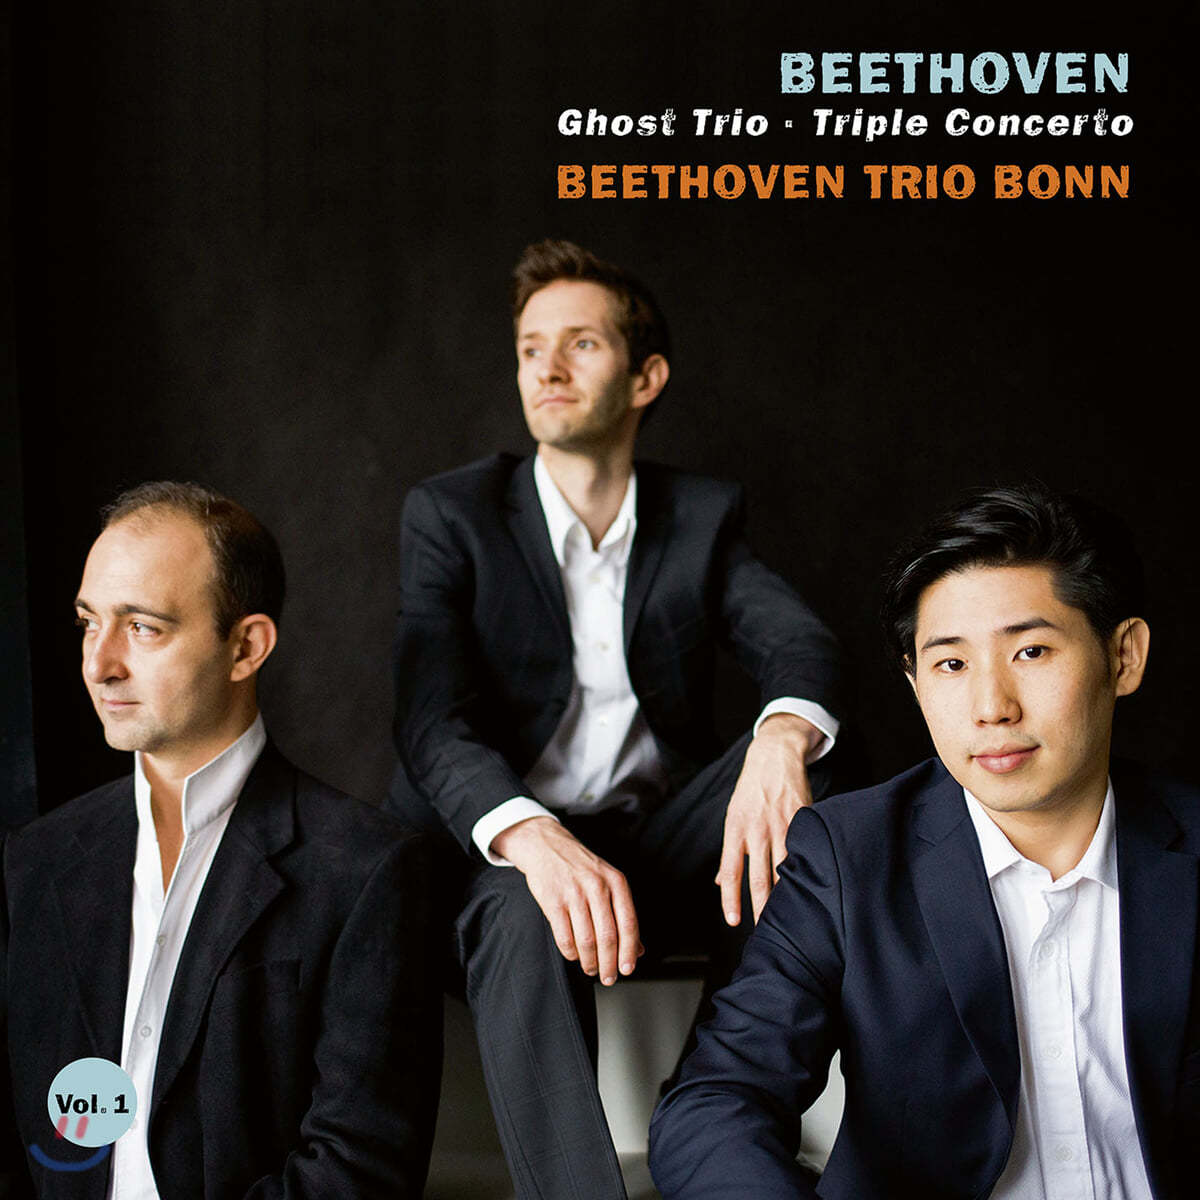 Beethoven Trio Bonn 베토벤: 피아노 3중주 5번 &#39;유령&#39;, 3중 협주곡 [피아노 3중주 버전] - 베토벤 트리오 본 